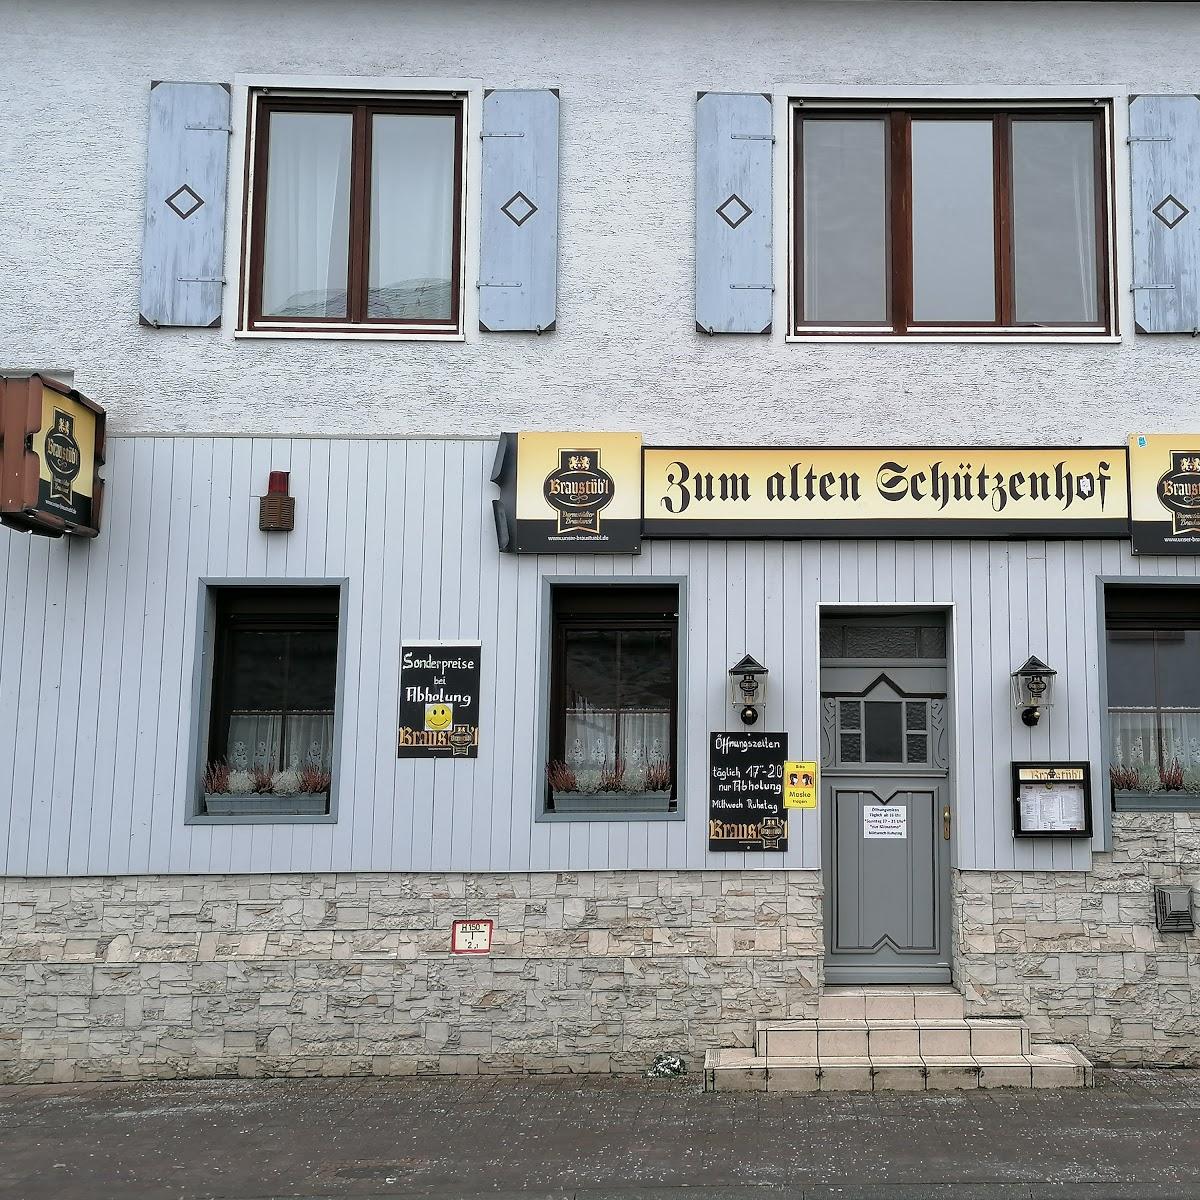 Restaurant "Zum alten Schützenhof" in Büttelborn